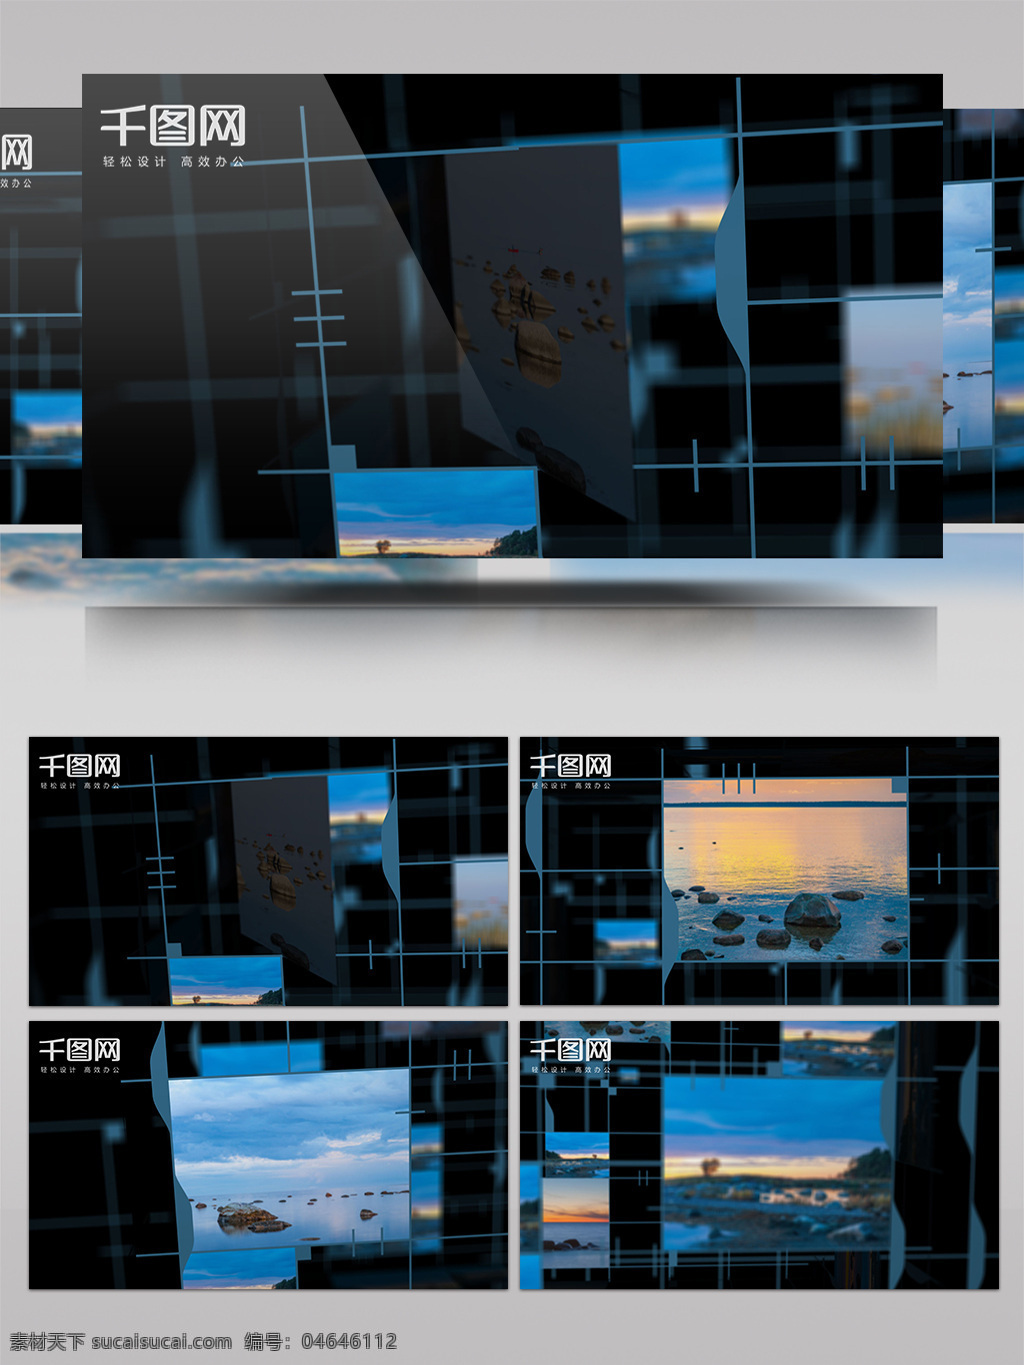 科技 感 照片 展示 ae 模板 蓝色 线条 相册 空间 相片 片头 视频模板 ae模板